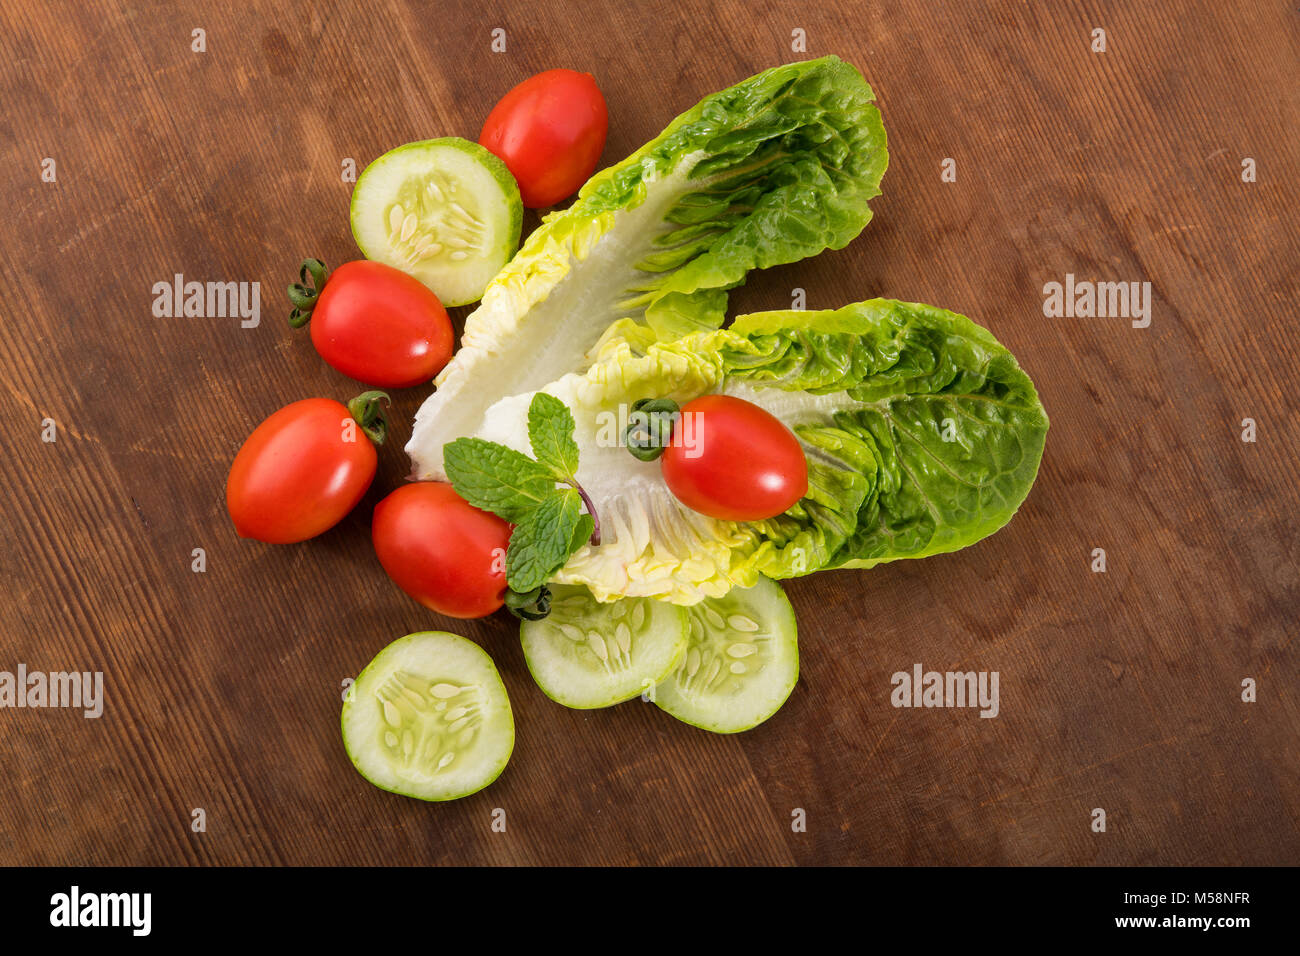 Verdura: fresco verde lechuga romana con el bebé los tomates, hojas de menta y rodajas de pepino sobre fondo de madera marrón Foto de stock